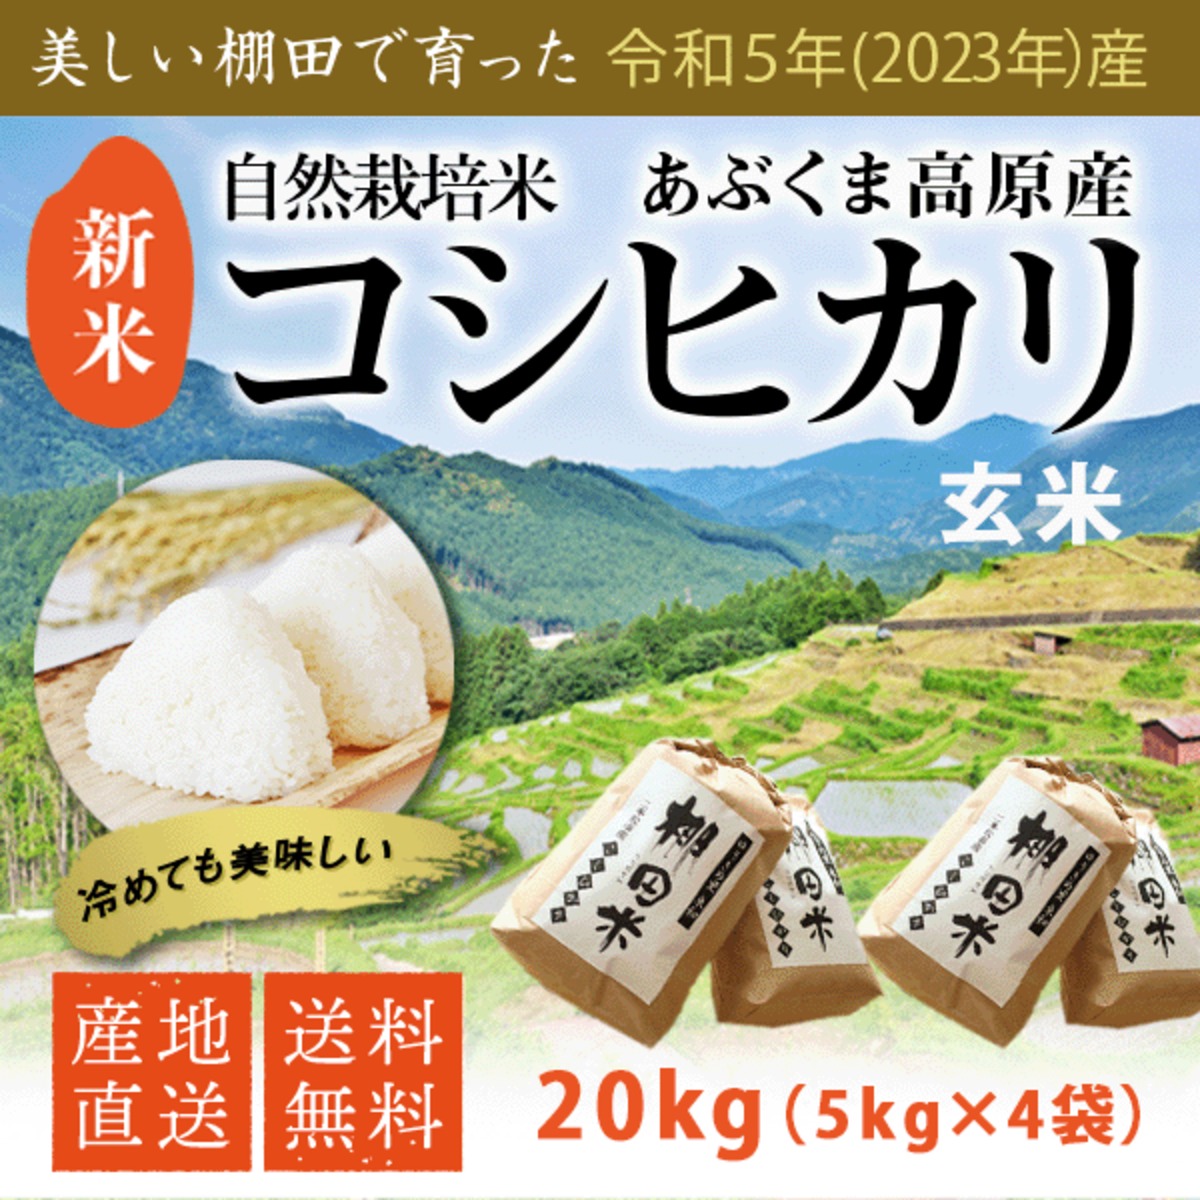 新米コシヒカリ20kg茨城県産◉玄米 - 米・雑穀・粉類